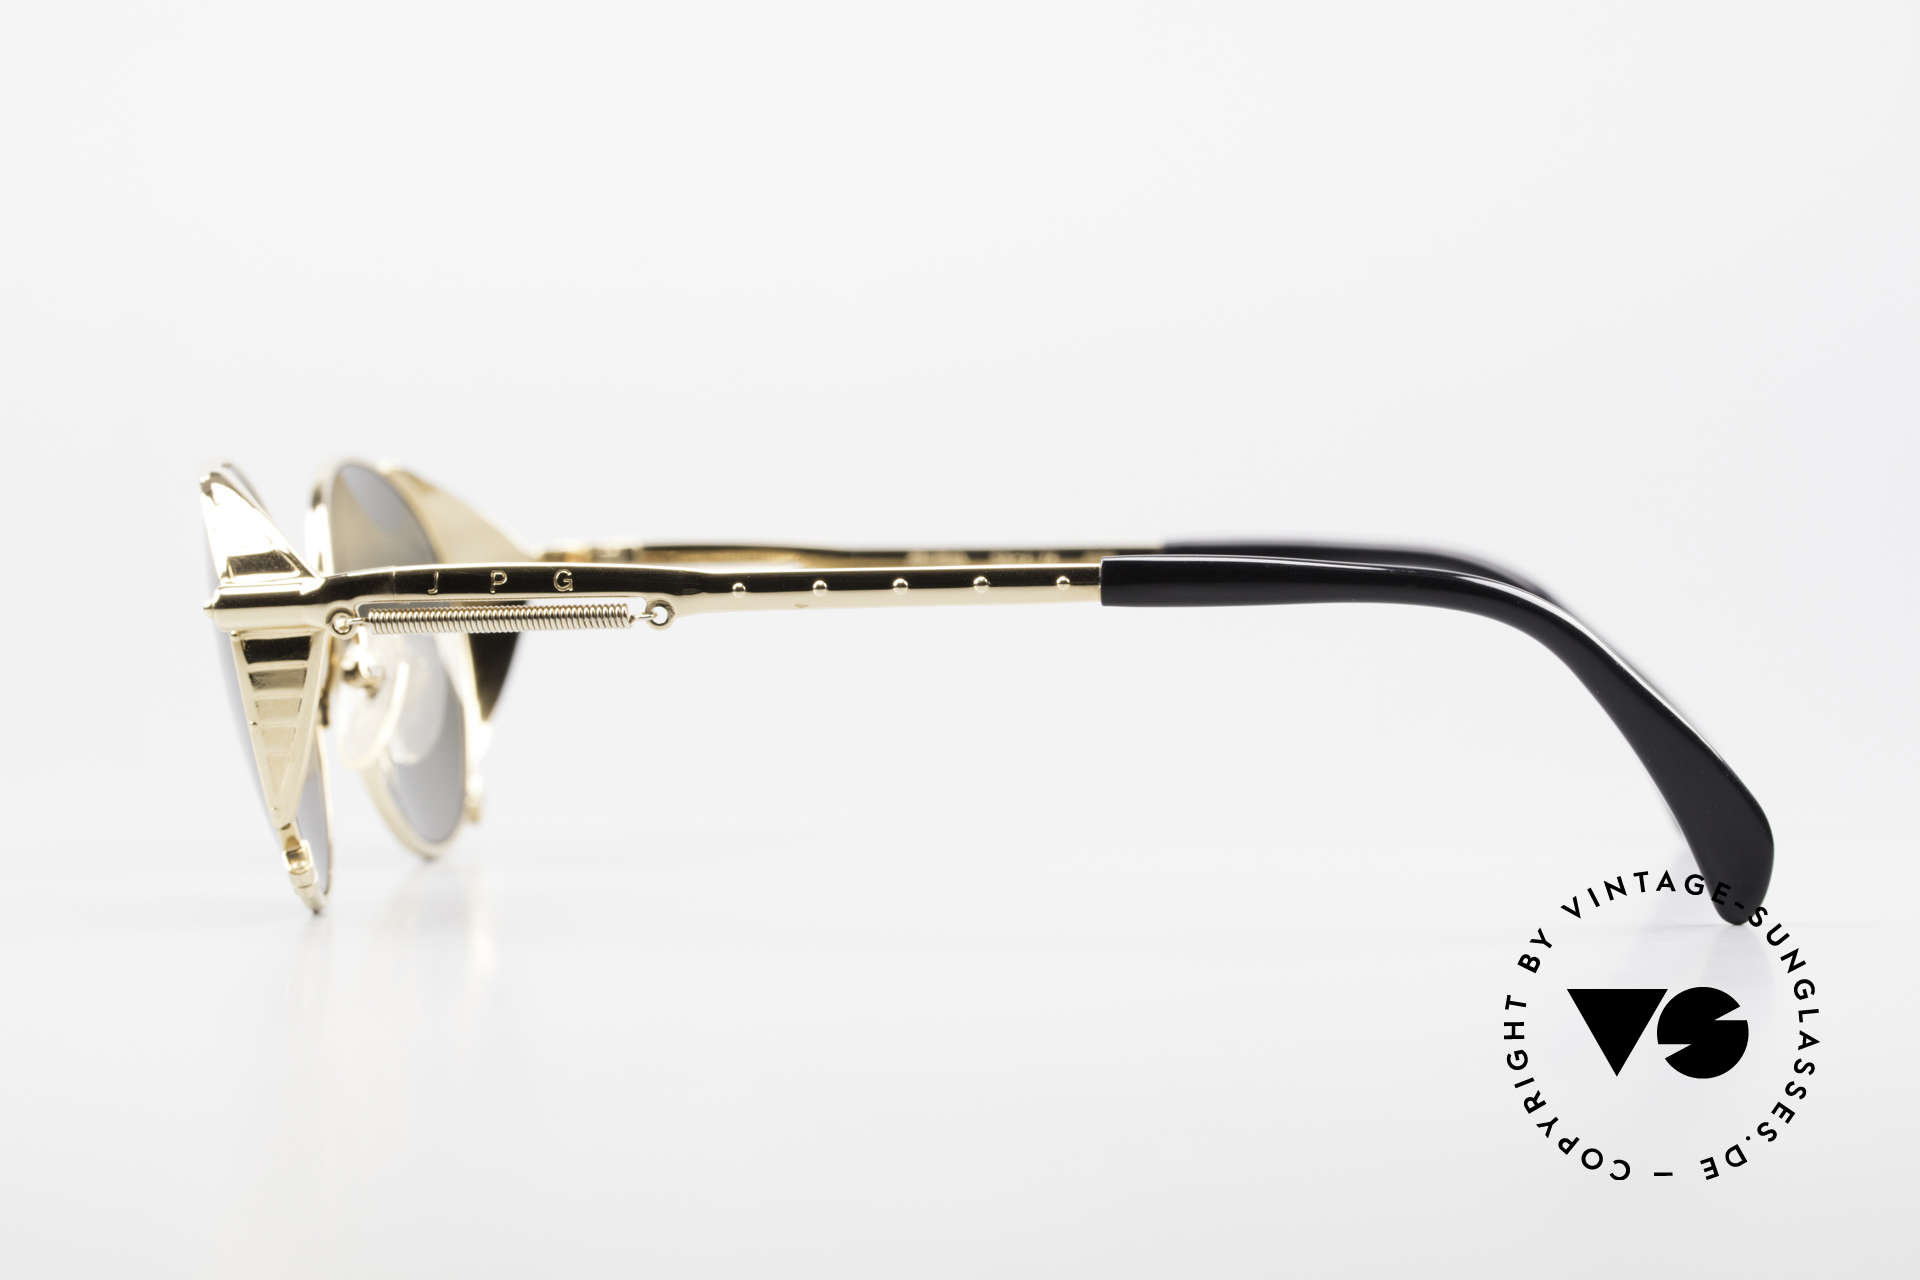 Jean Paul Gaultier 56-4174 Steampunk Sonnenbrille 90er, KEINE retro Sonnenbrille, 100% vintage Original, Passend für Herren und Damen